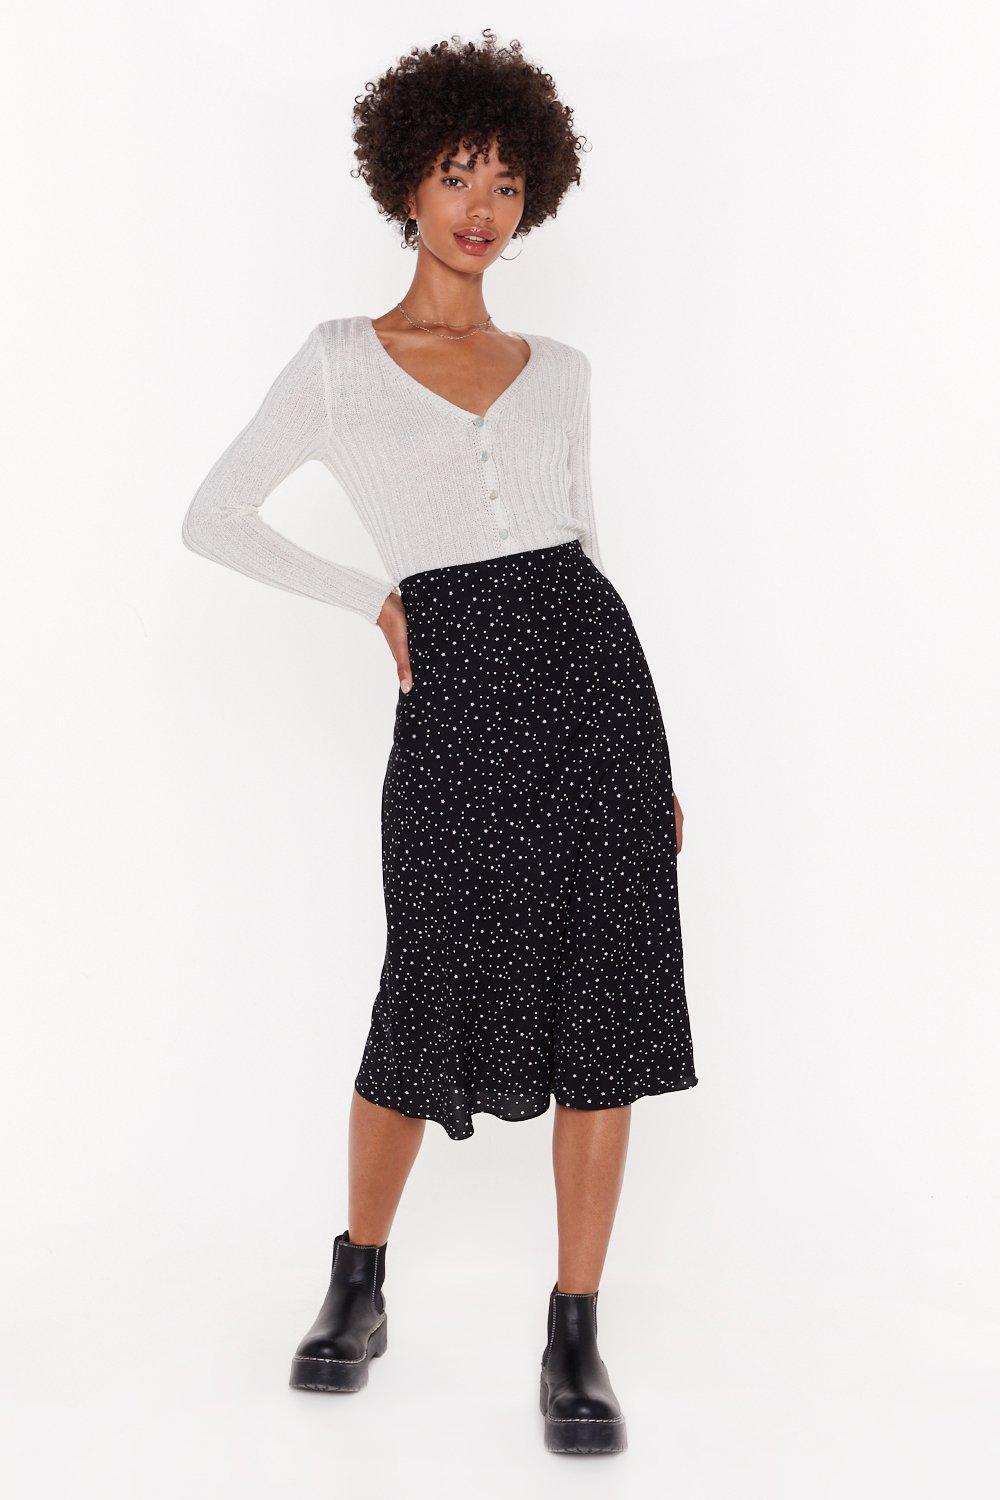 long black polka dot skirt